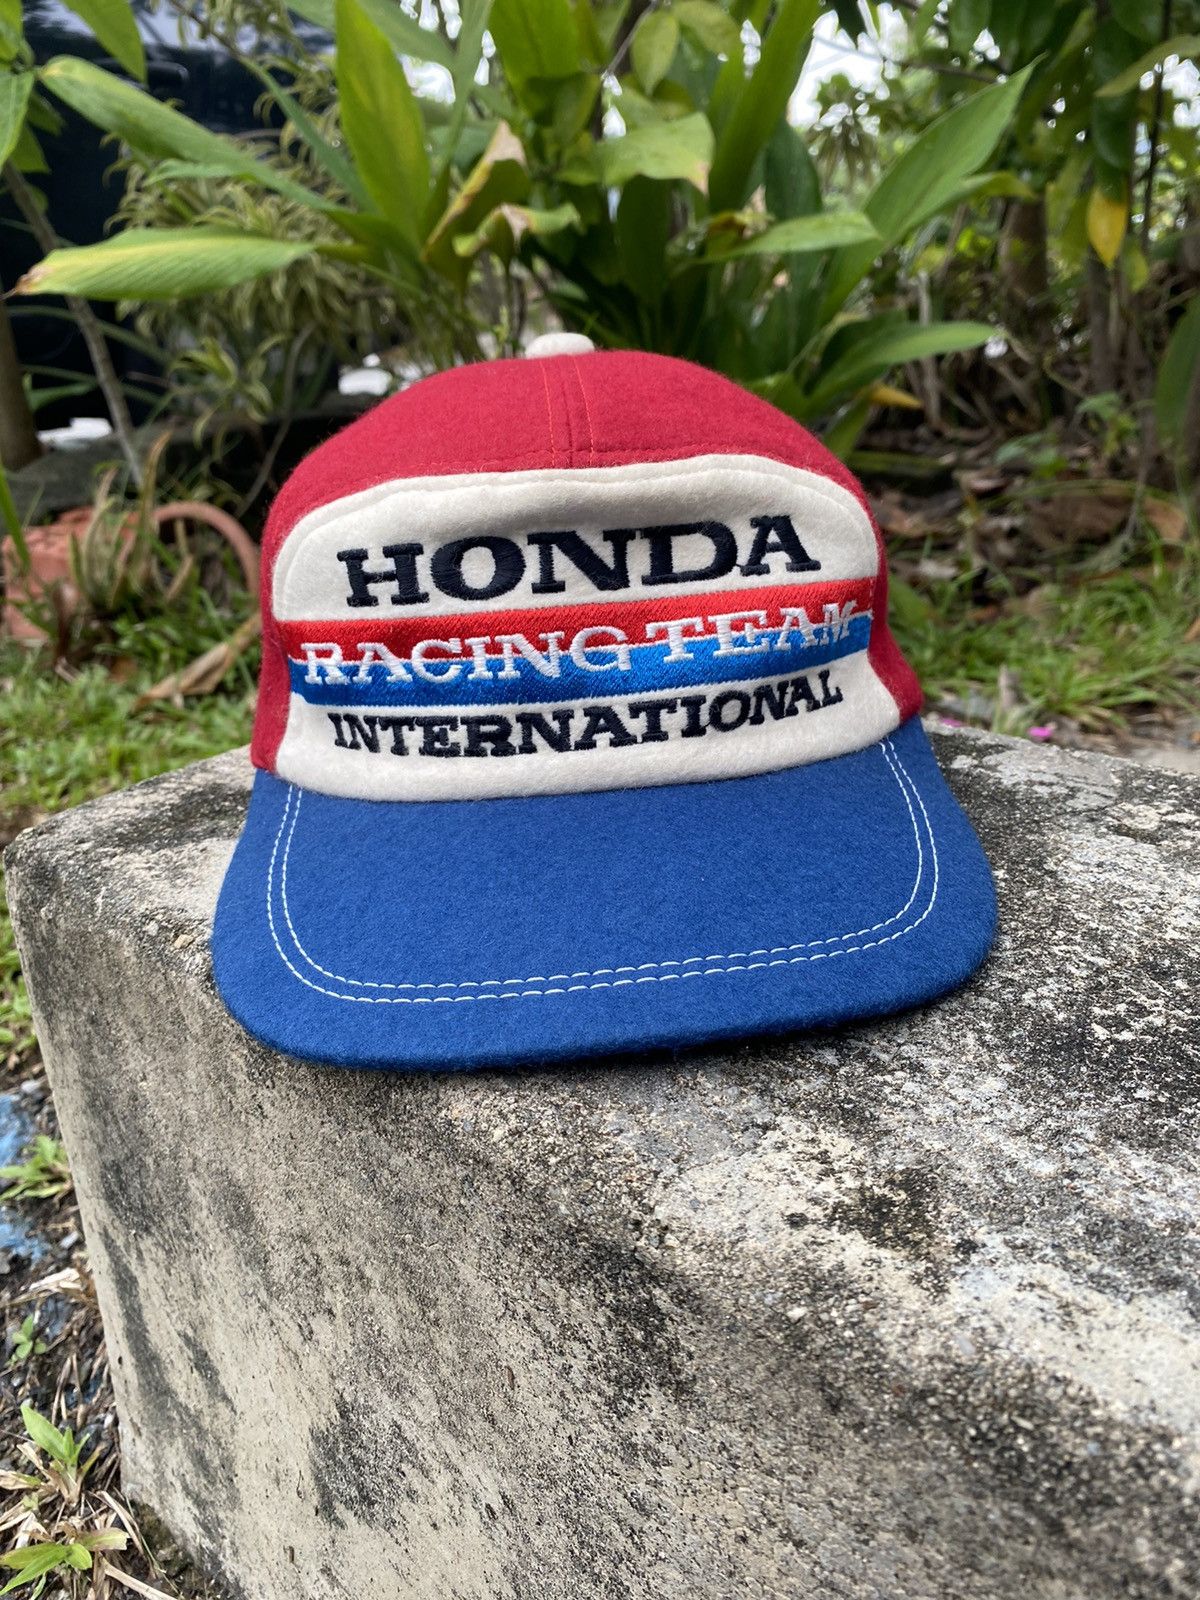 Vintage Honda Racing Team International Hat - 1